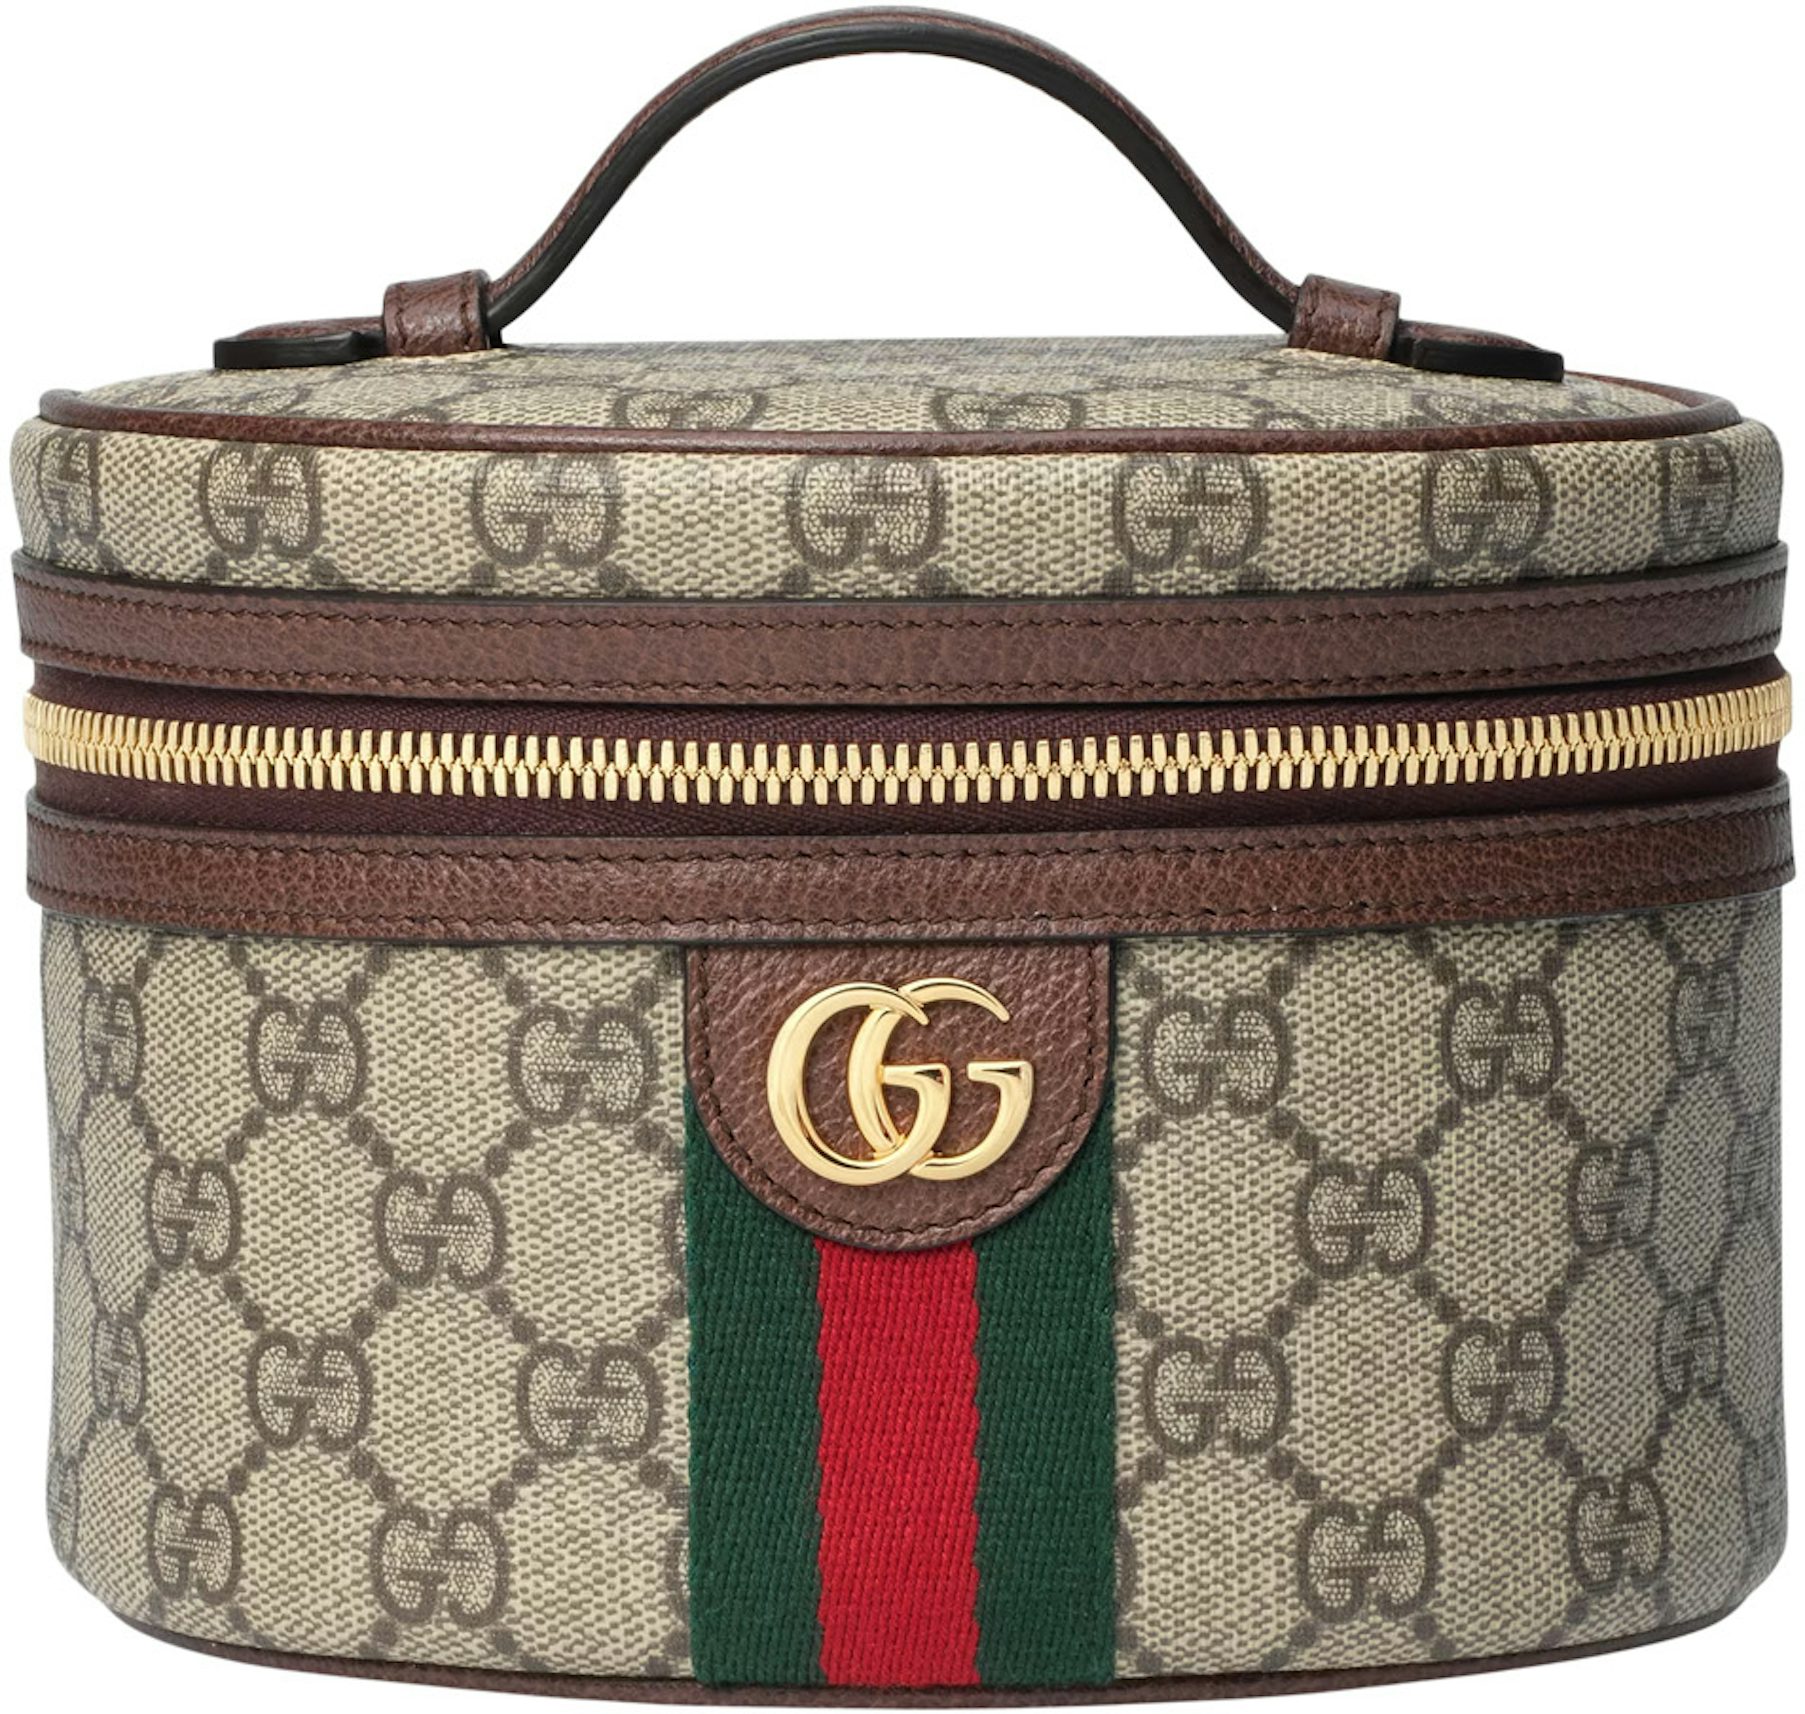 Gucci AirPods case  Gucci, Louis vuitton speedy bag, Bags